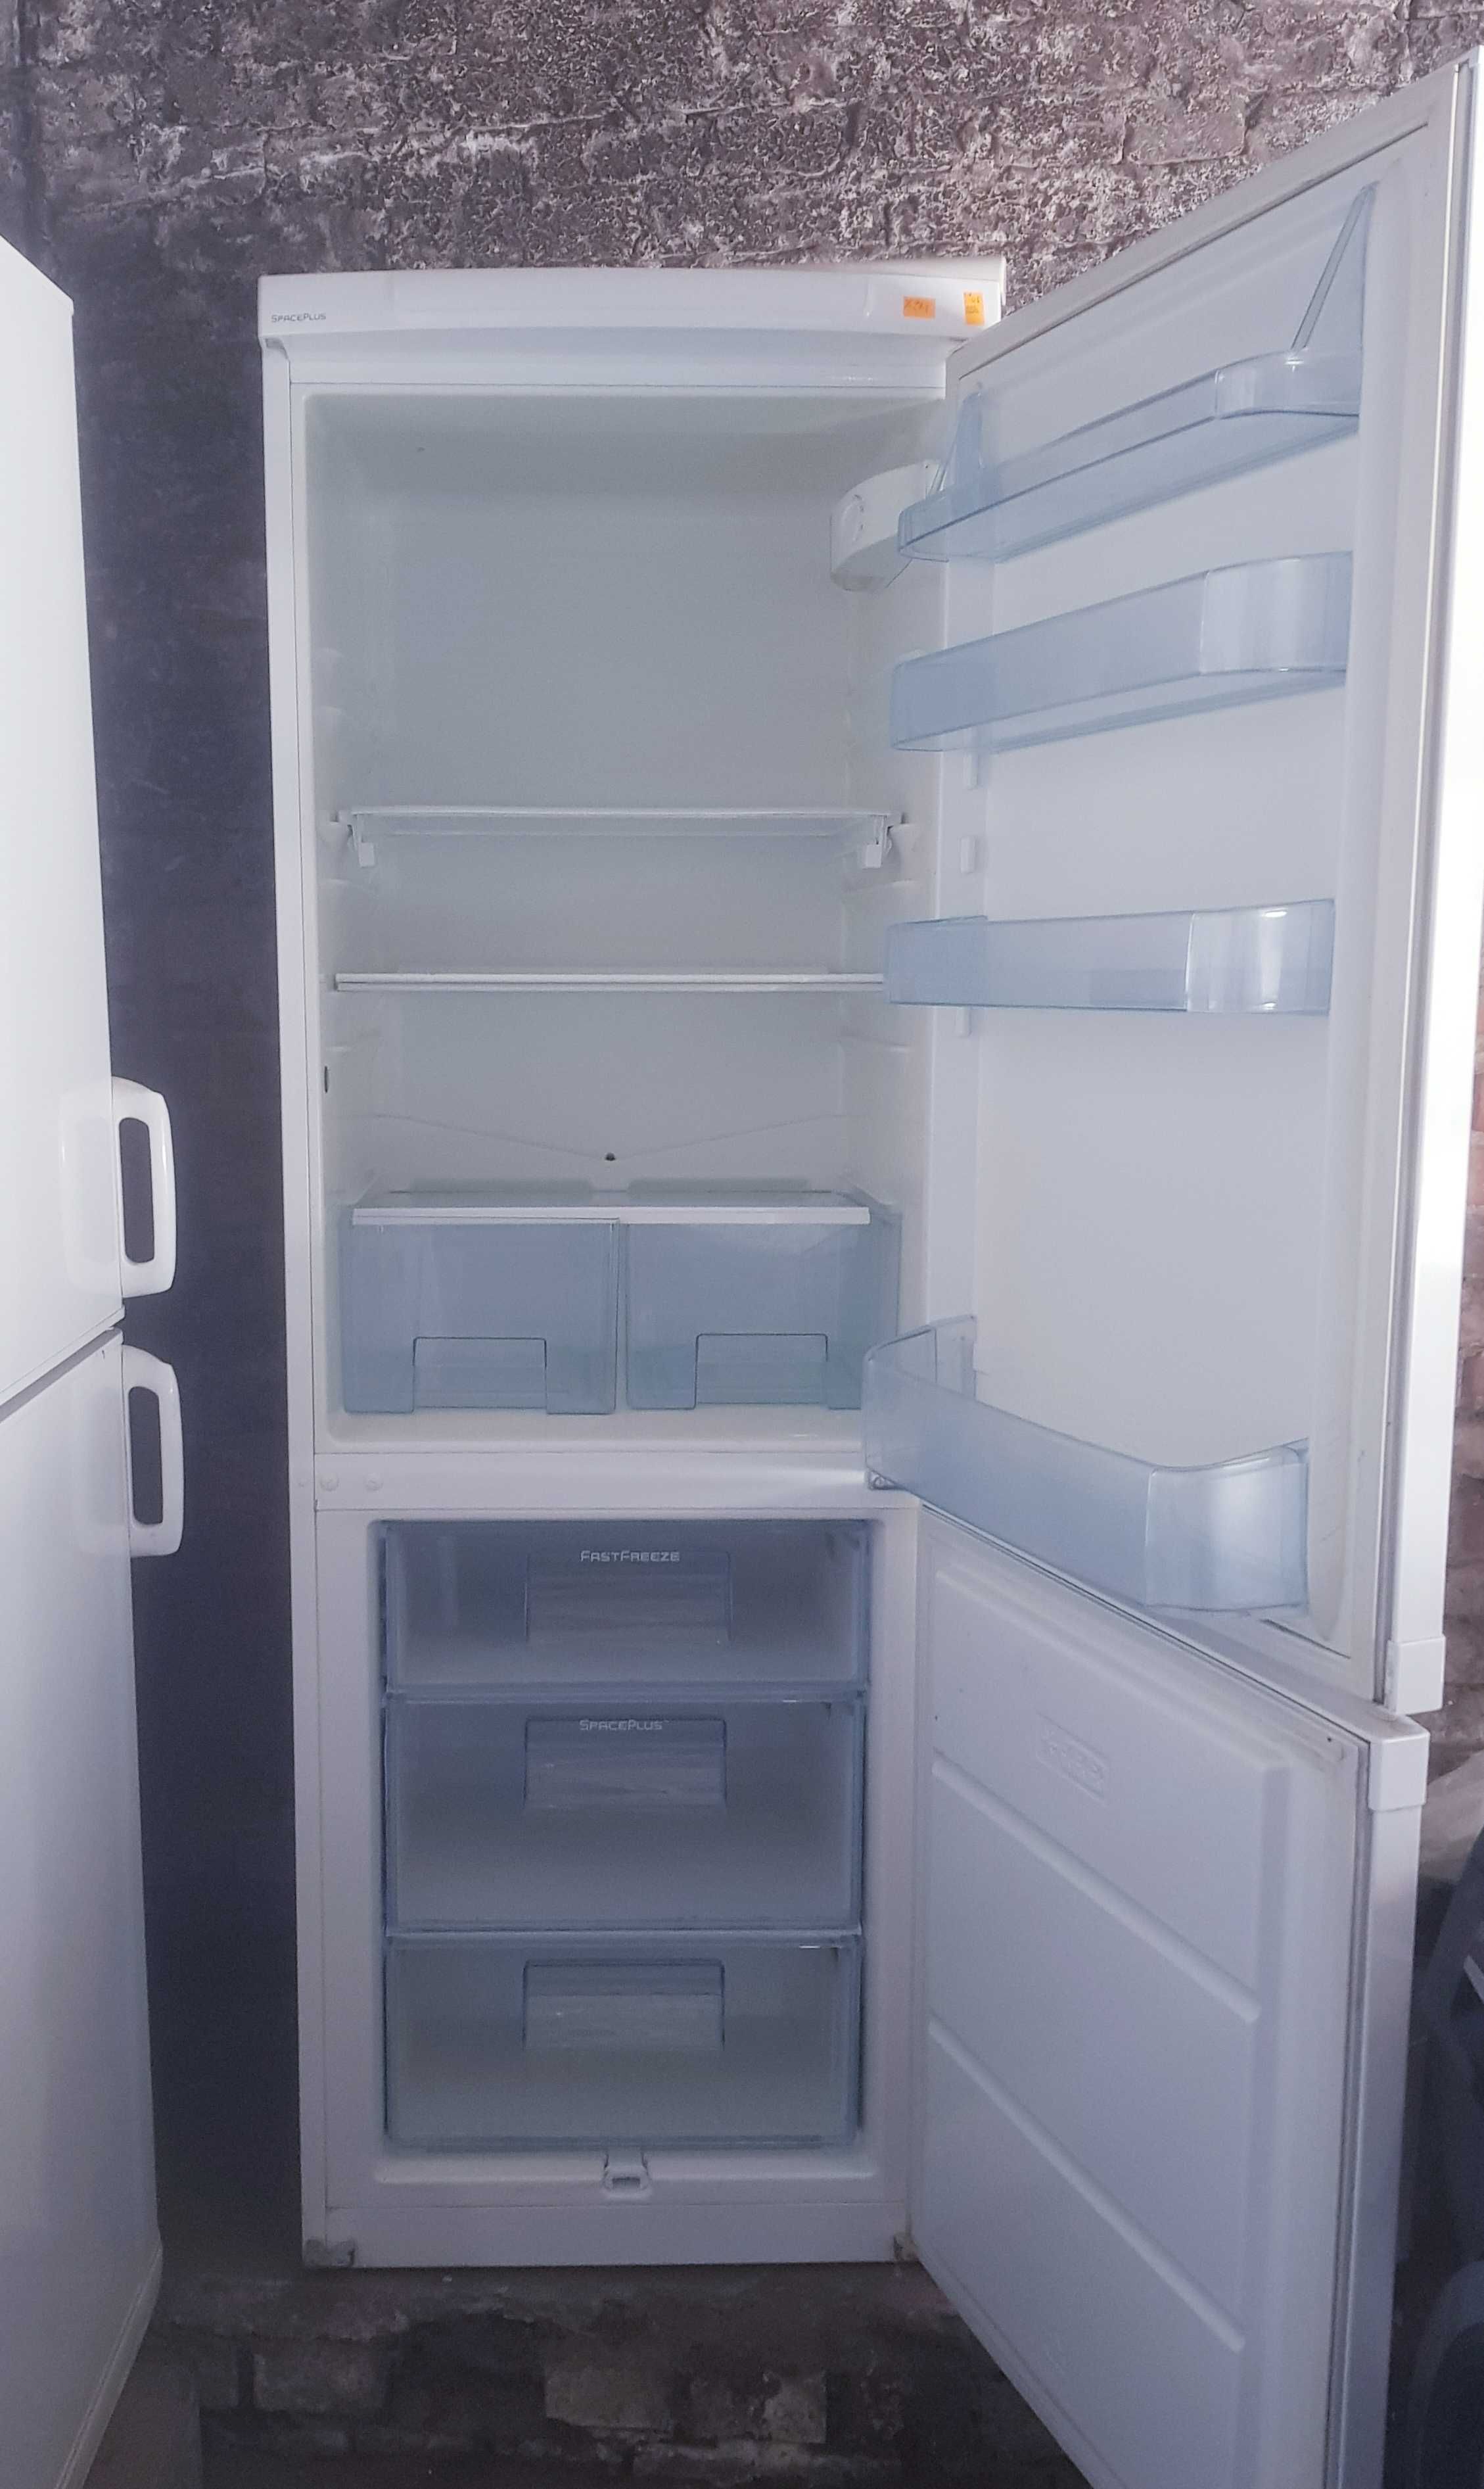 Холодильник Electrolux ERB34233W   (175 см) з Європи